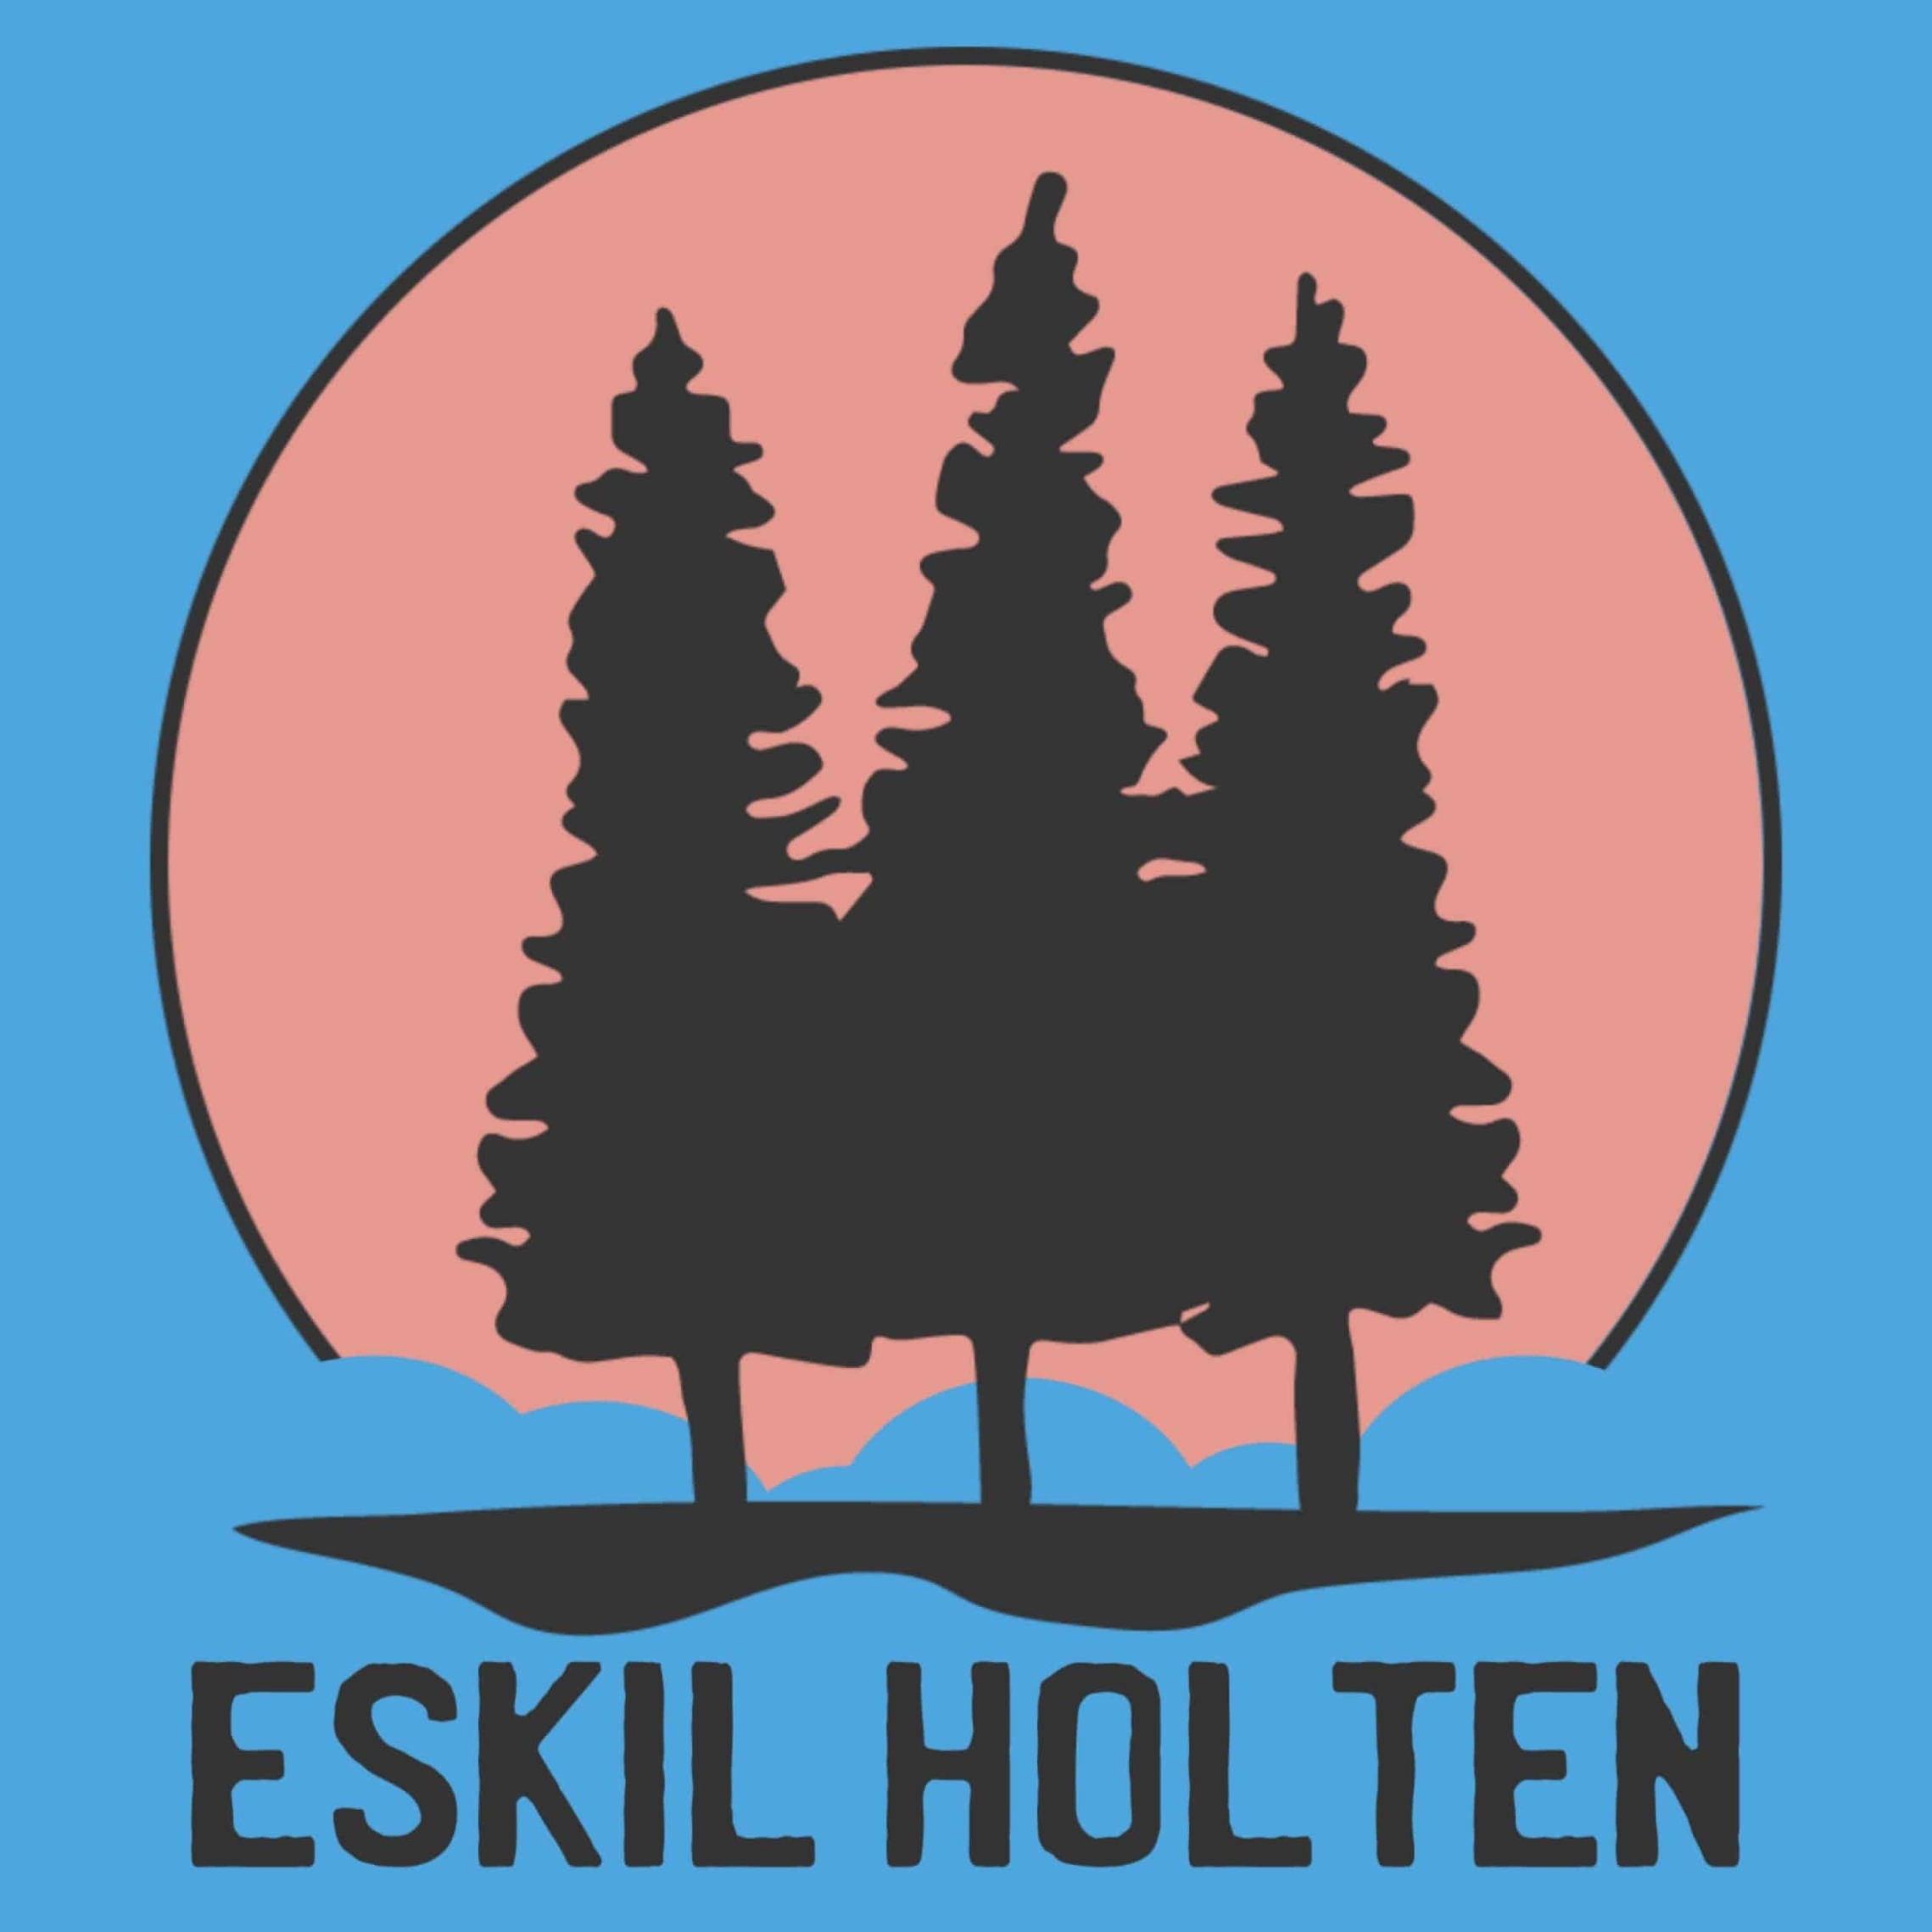 Eskil Holten